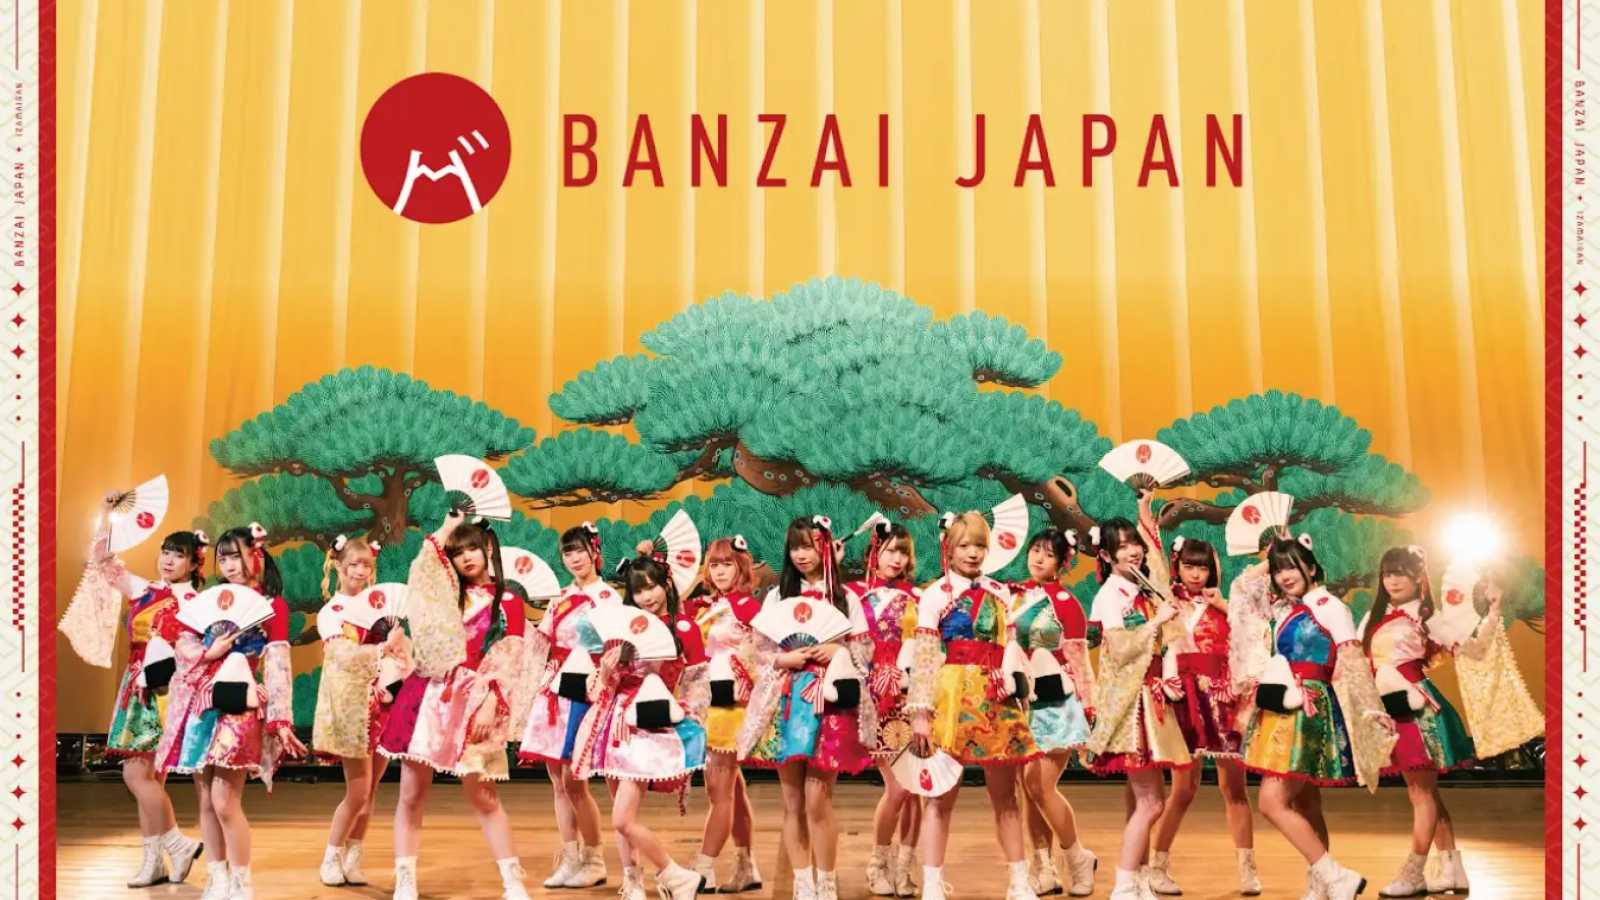 BANZAI JAPAN © BANZAI JAPAN. All rights reserved.